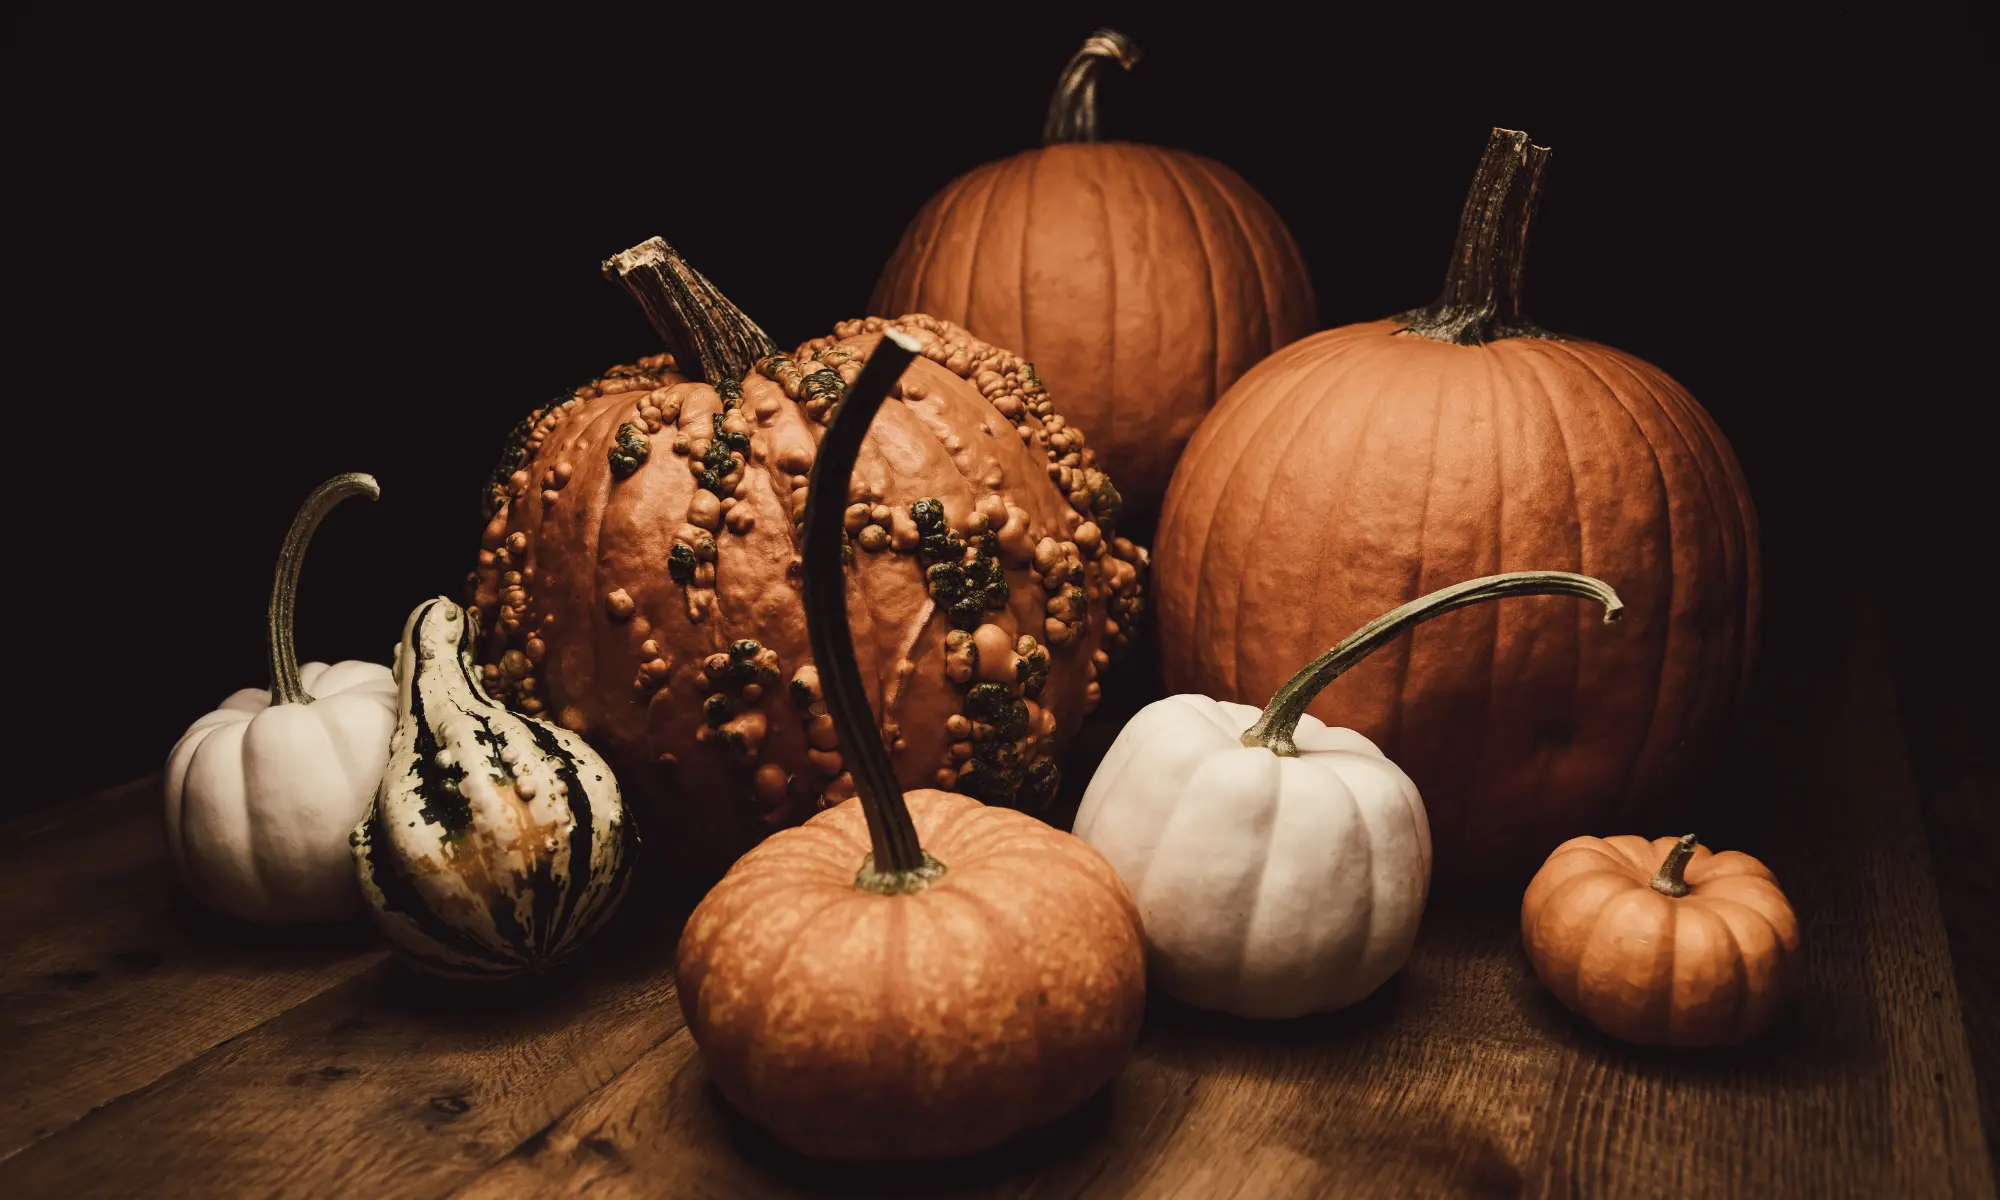 An assortment of different types of pumpkins.